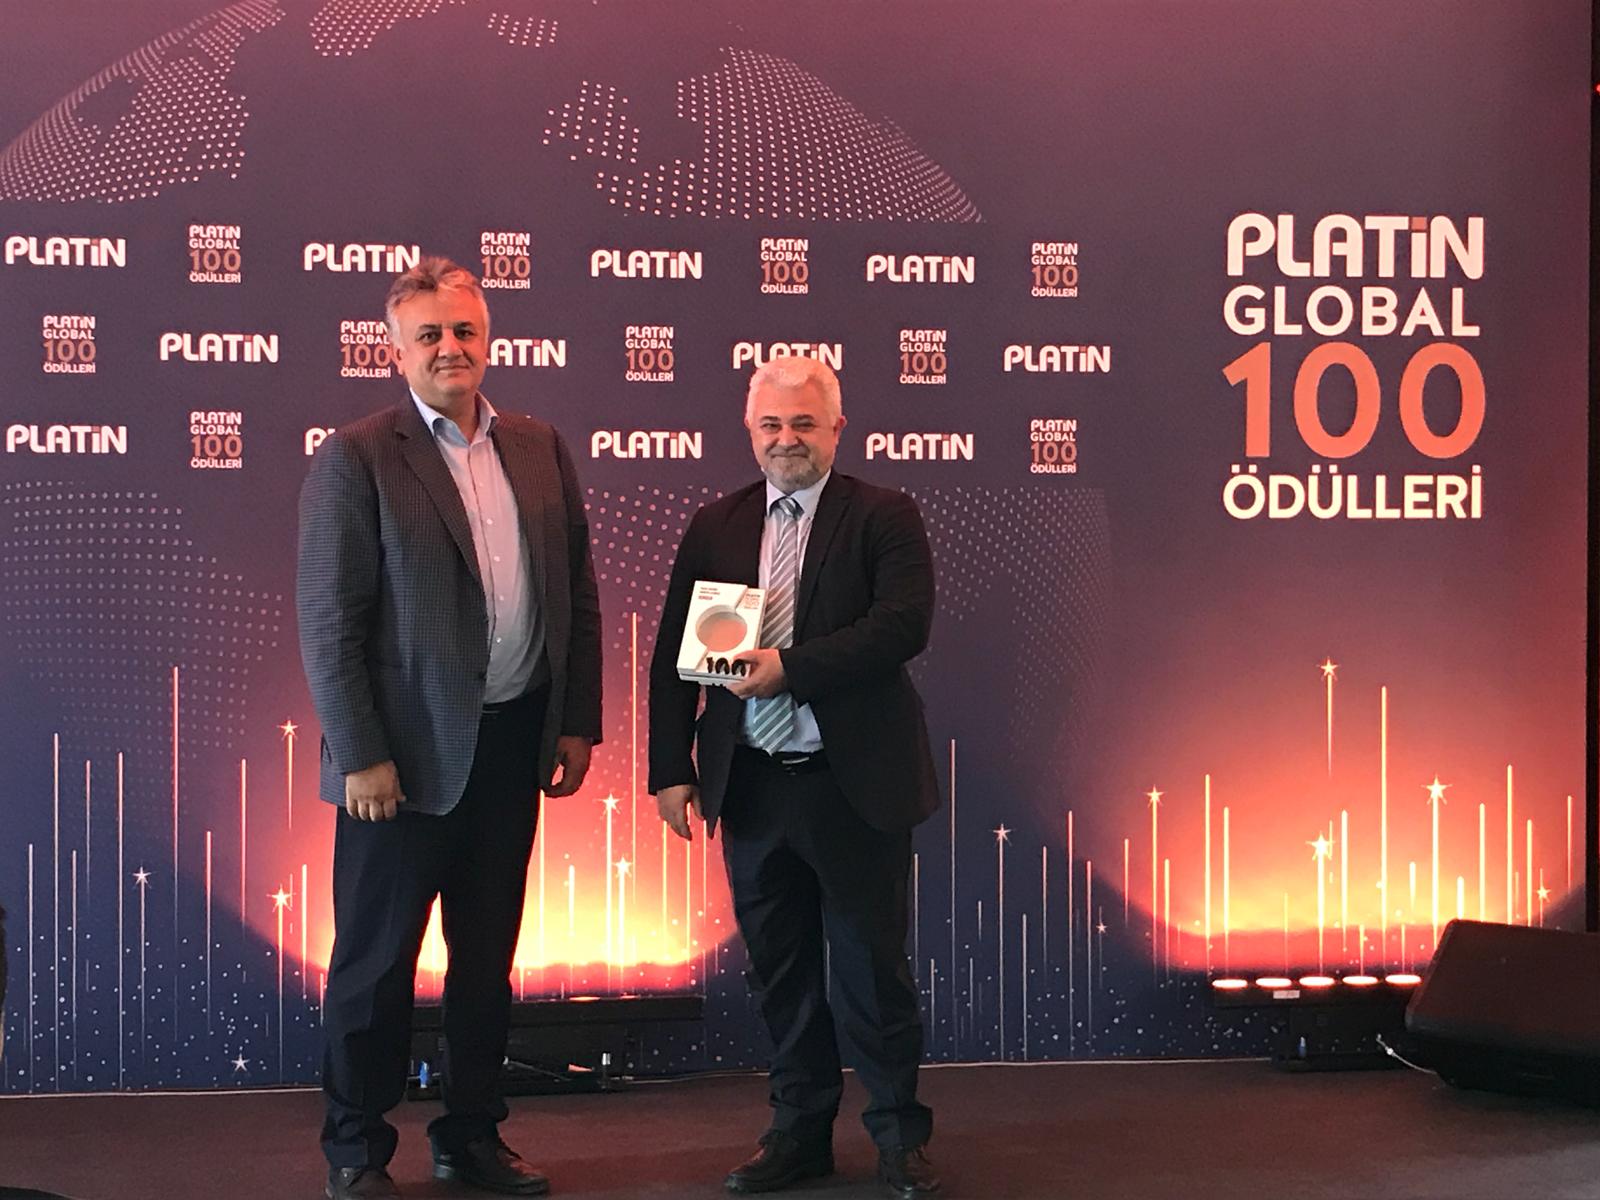 Industry 4.0 Award to Kordsa at Platin Global 100 Awards